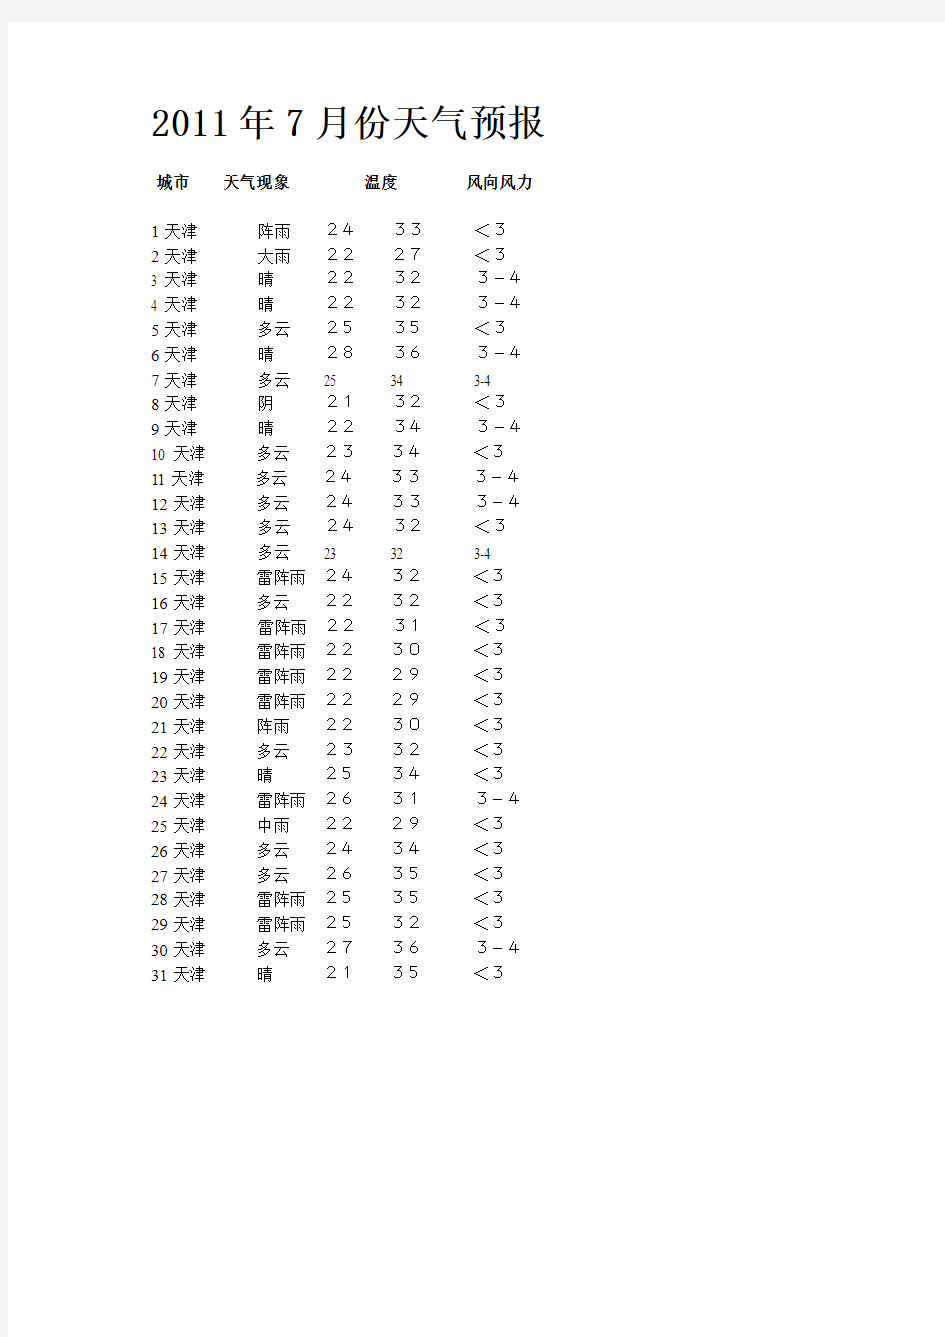 2011年7月6日天津天气预报历史天气查询记录数据